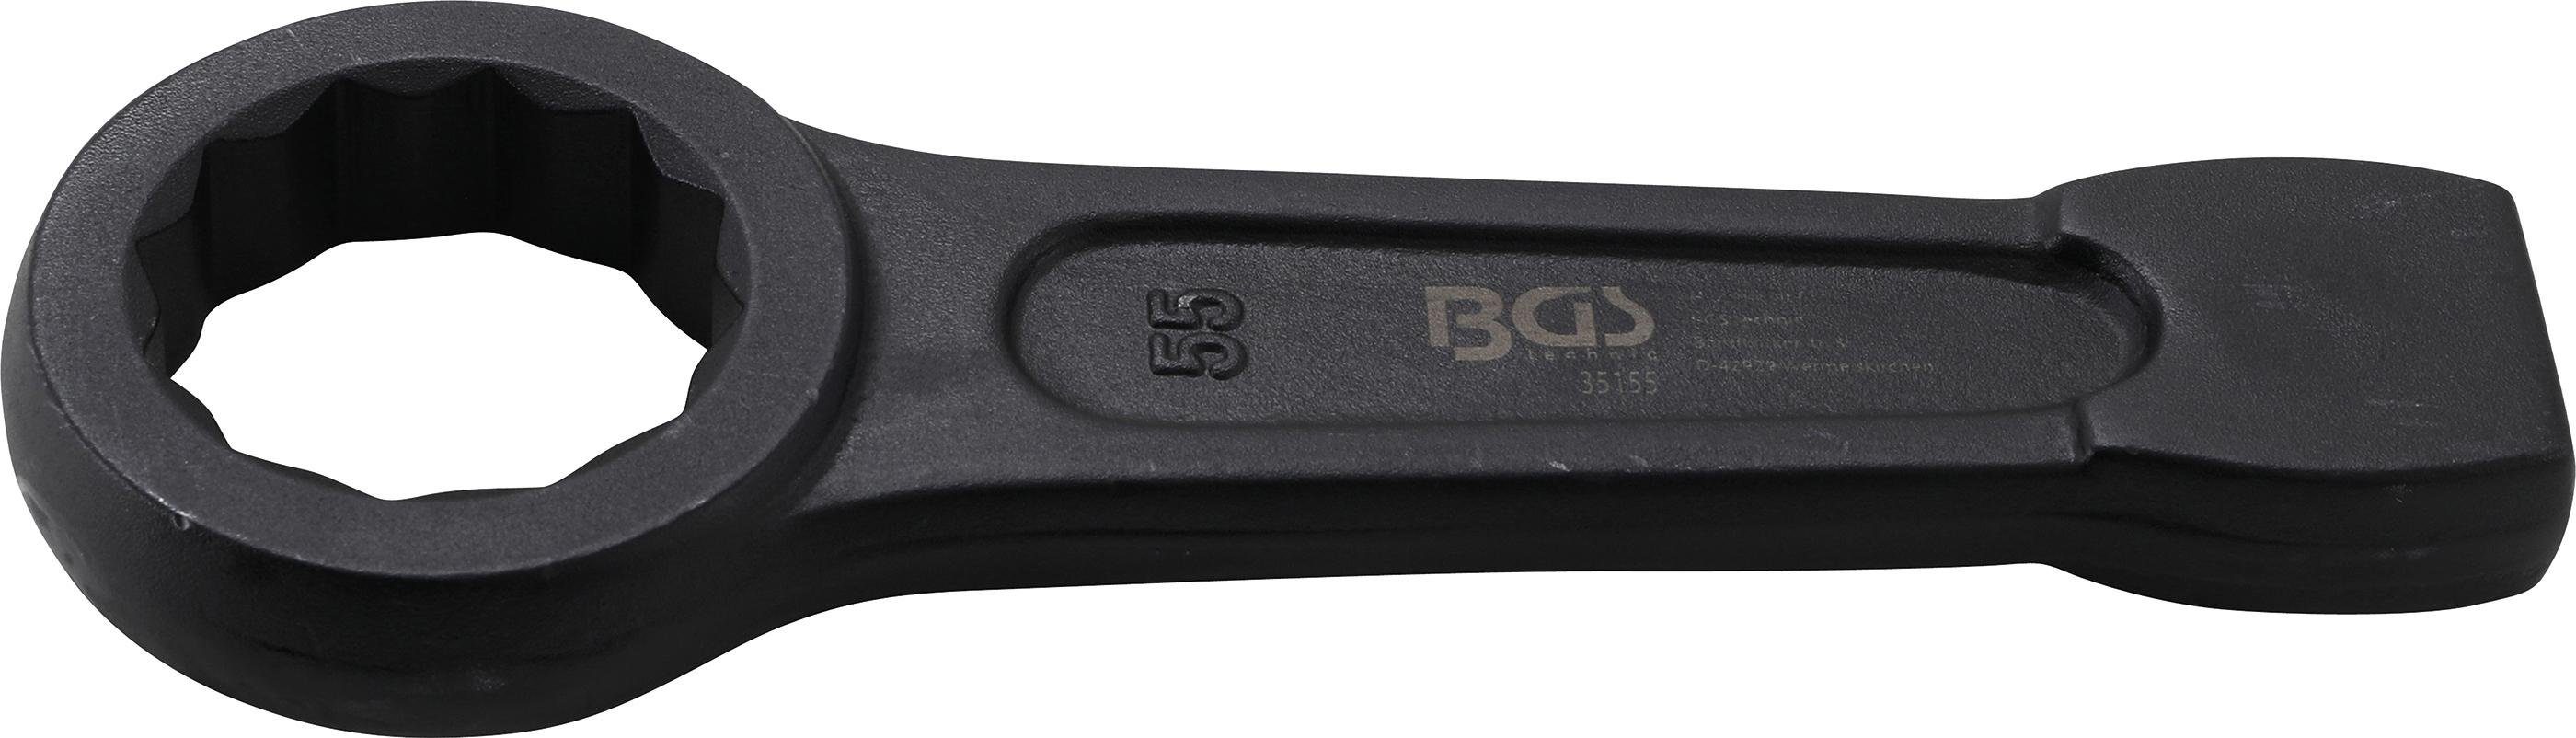 BGS technic SW mm 55 Ringschlüssel Schlag-Ringschlüssel